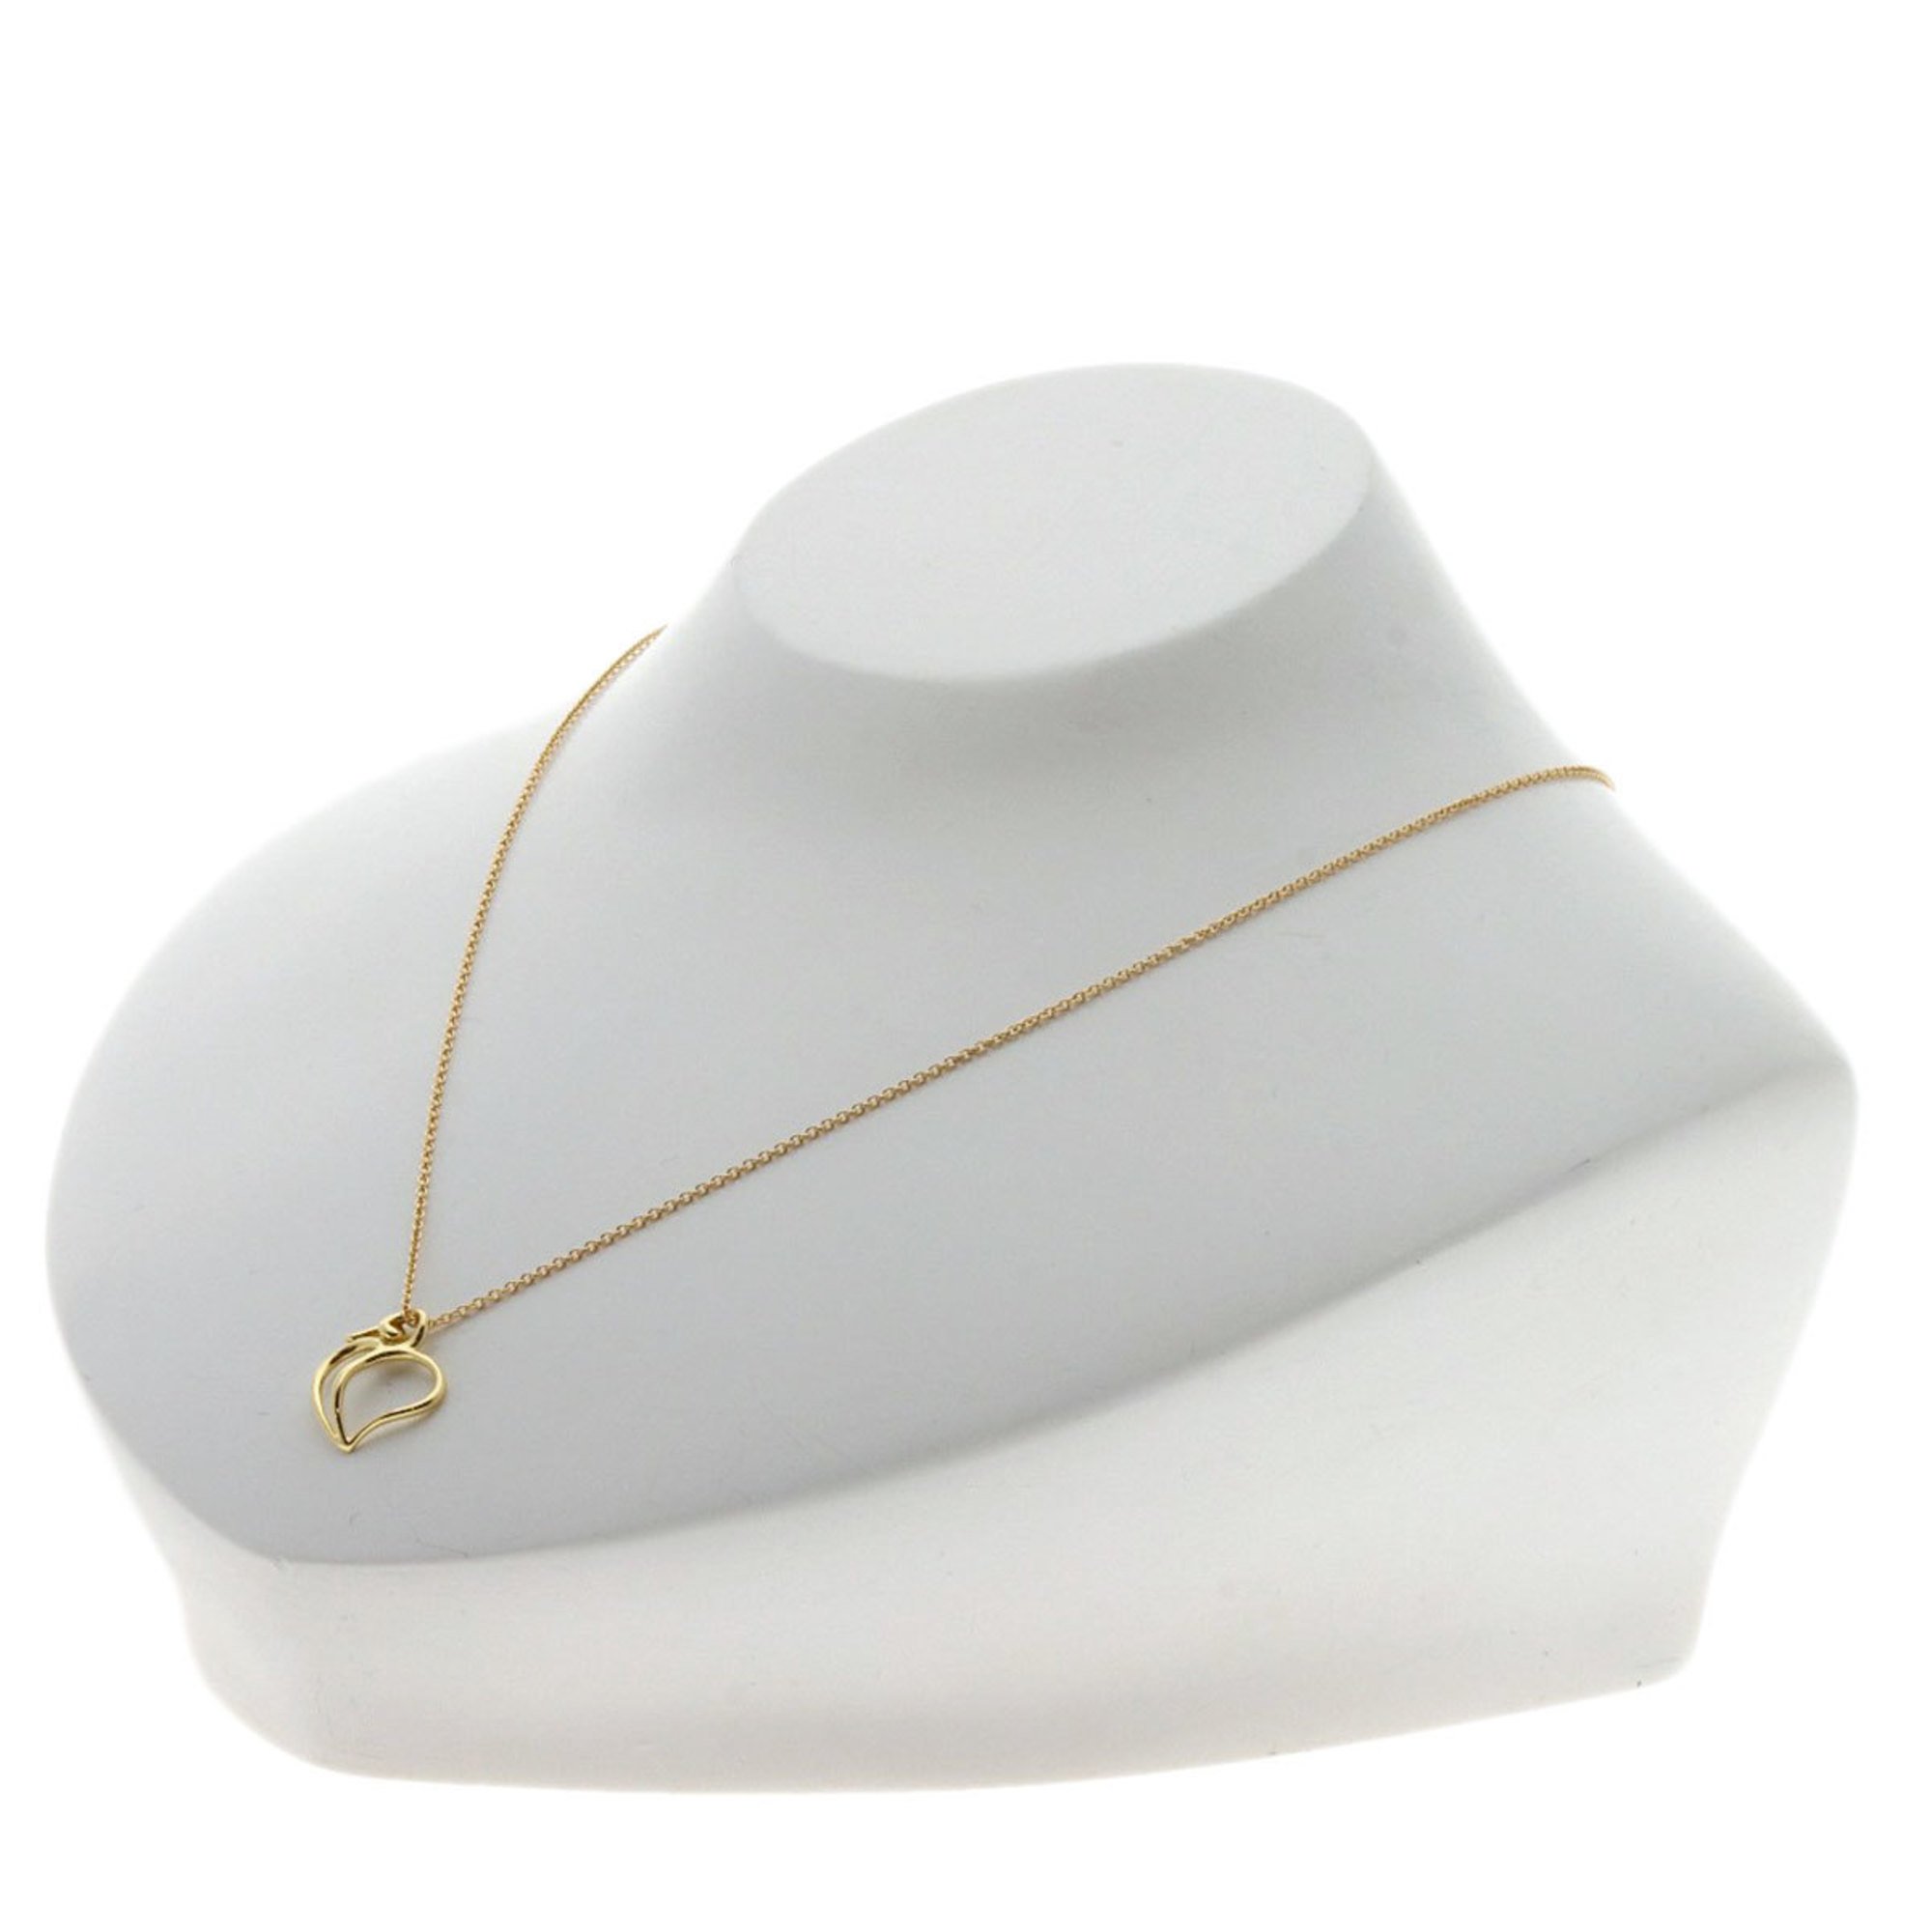 Tiffany & Co. Apple Heart Necklace, 18K Yellow Gold, Women's, TIFFANY